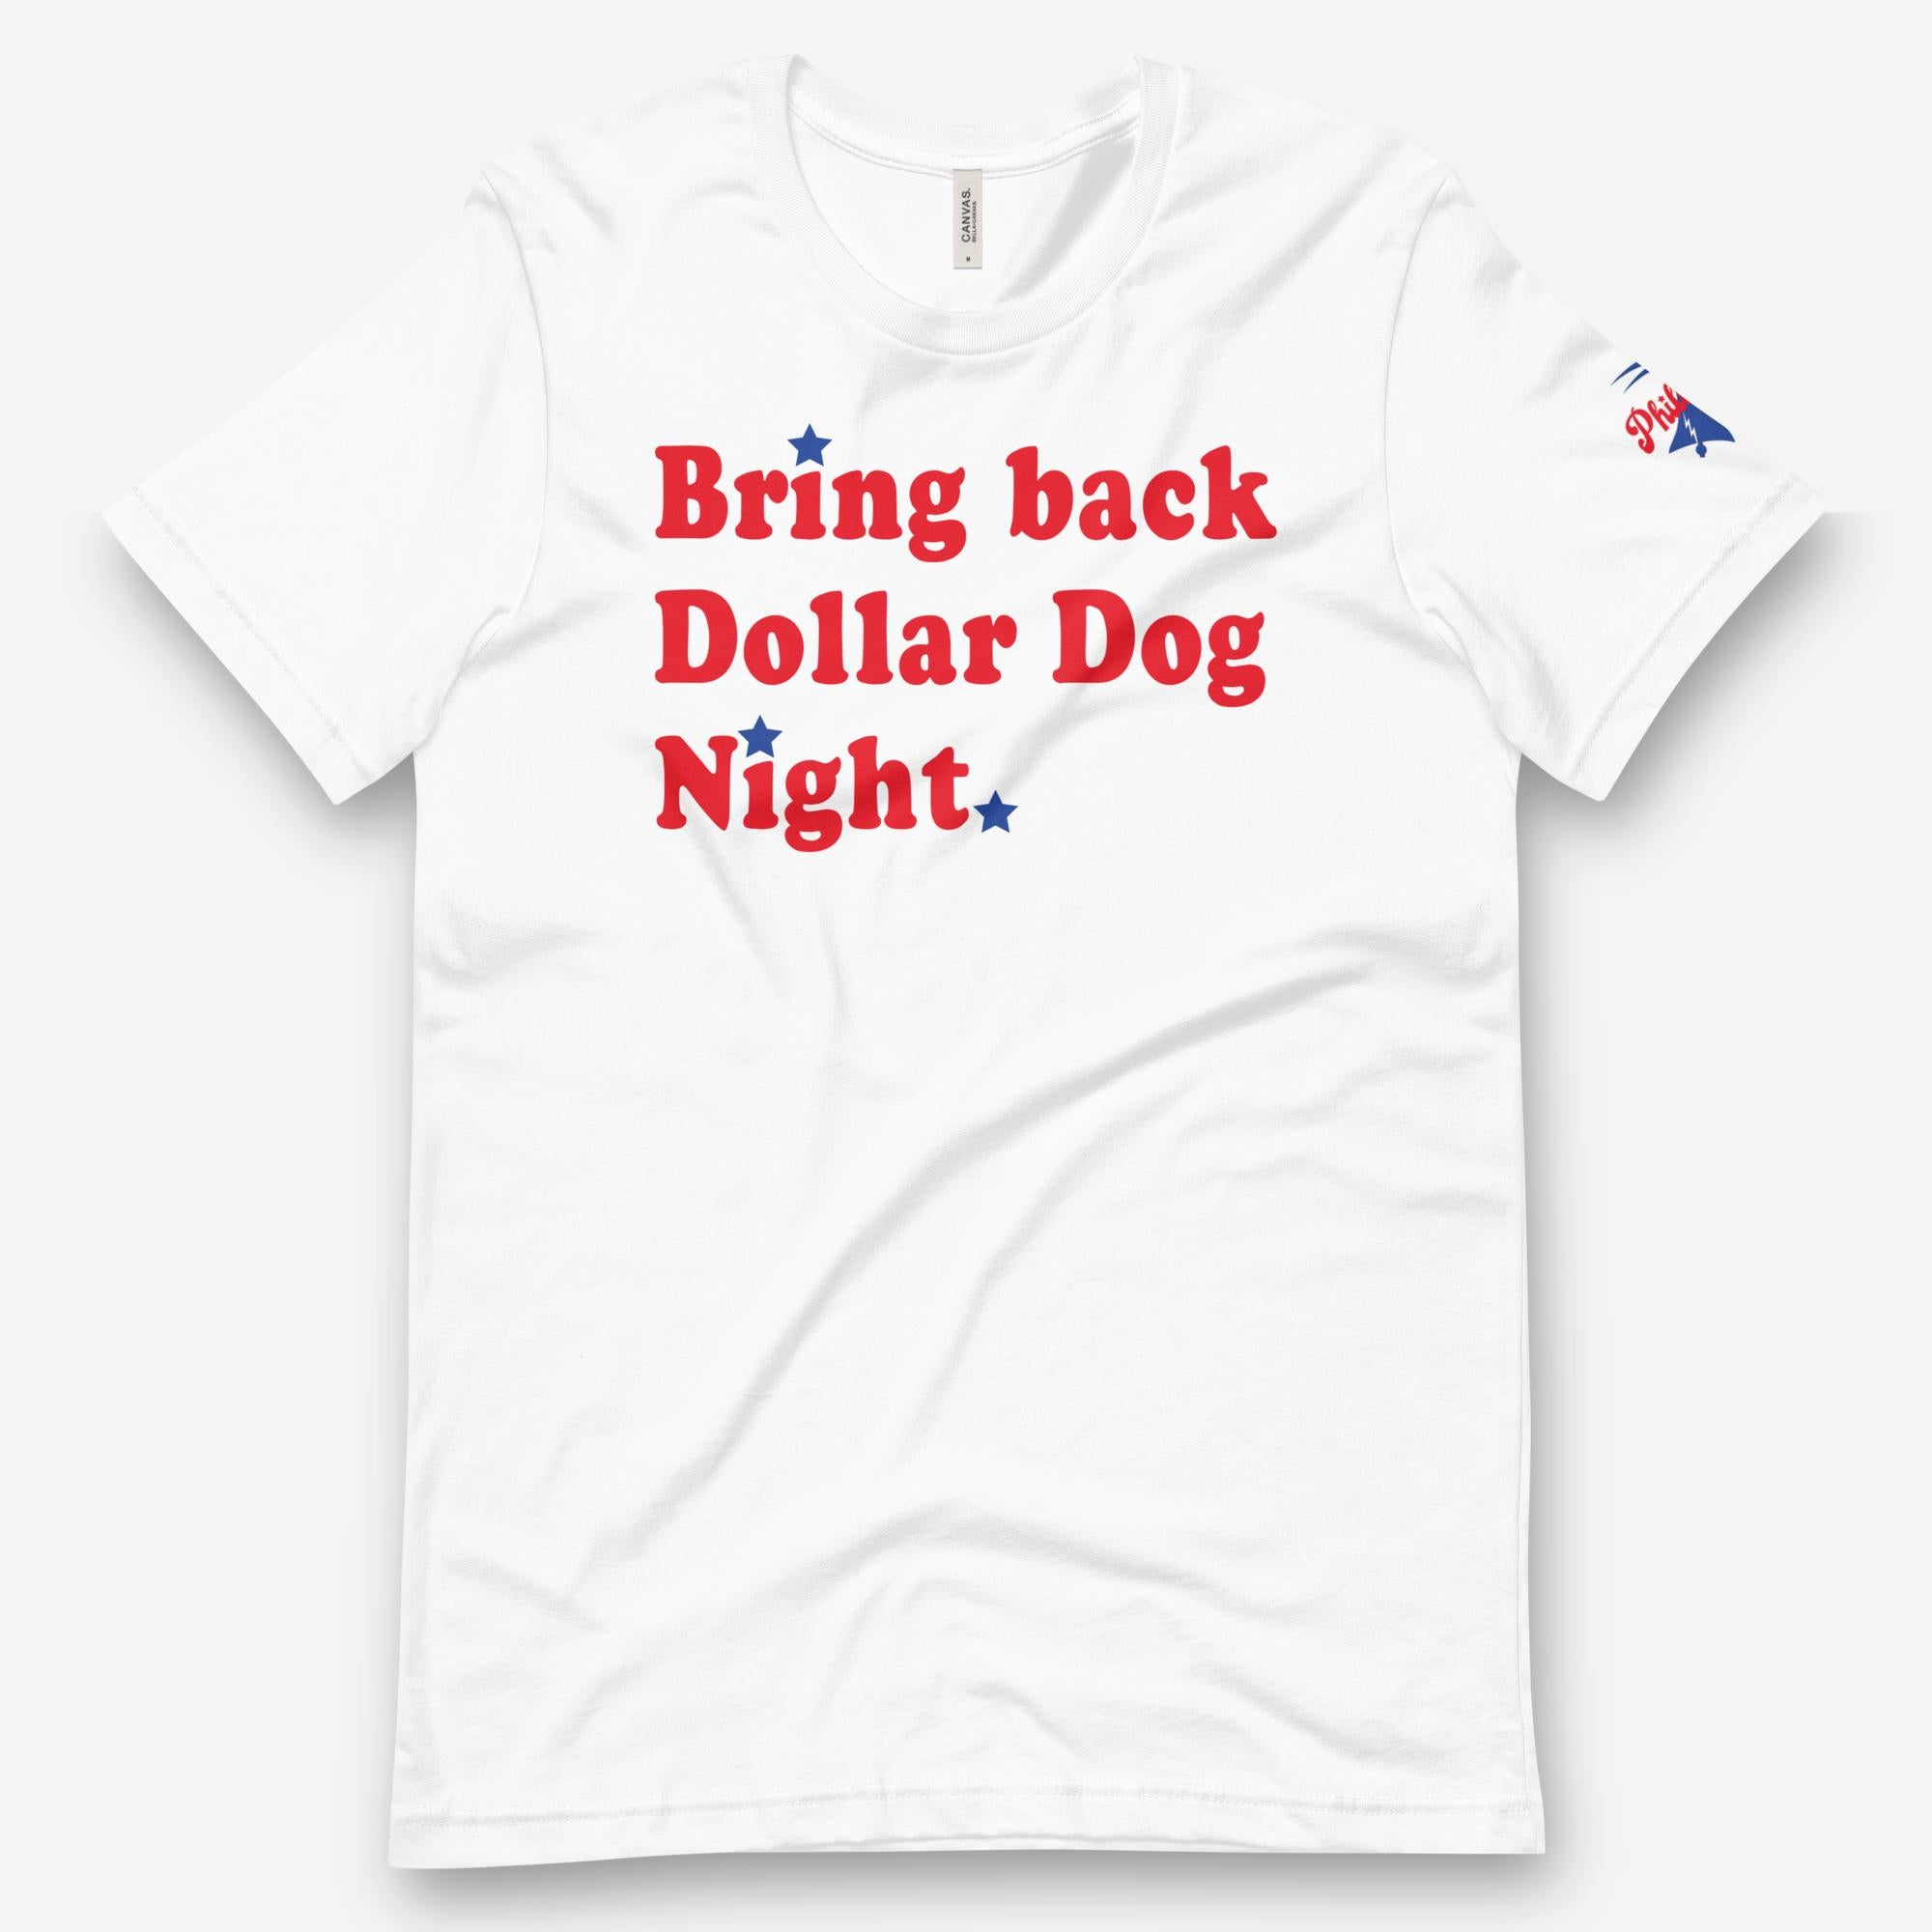 "Bring Back Dollar Dog Night" Tee